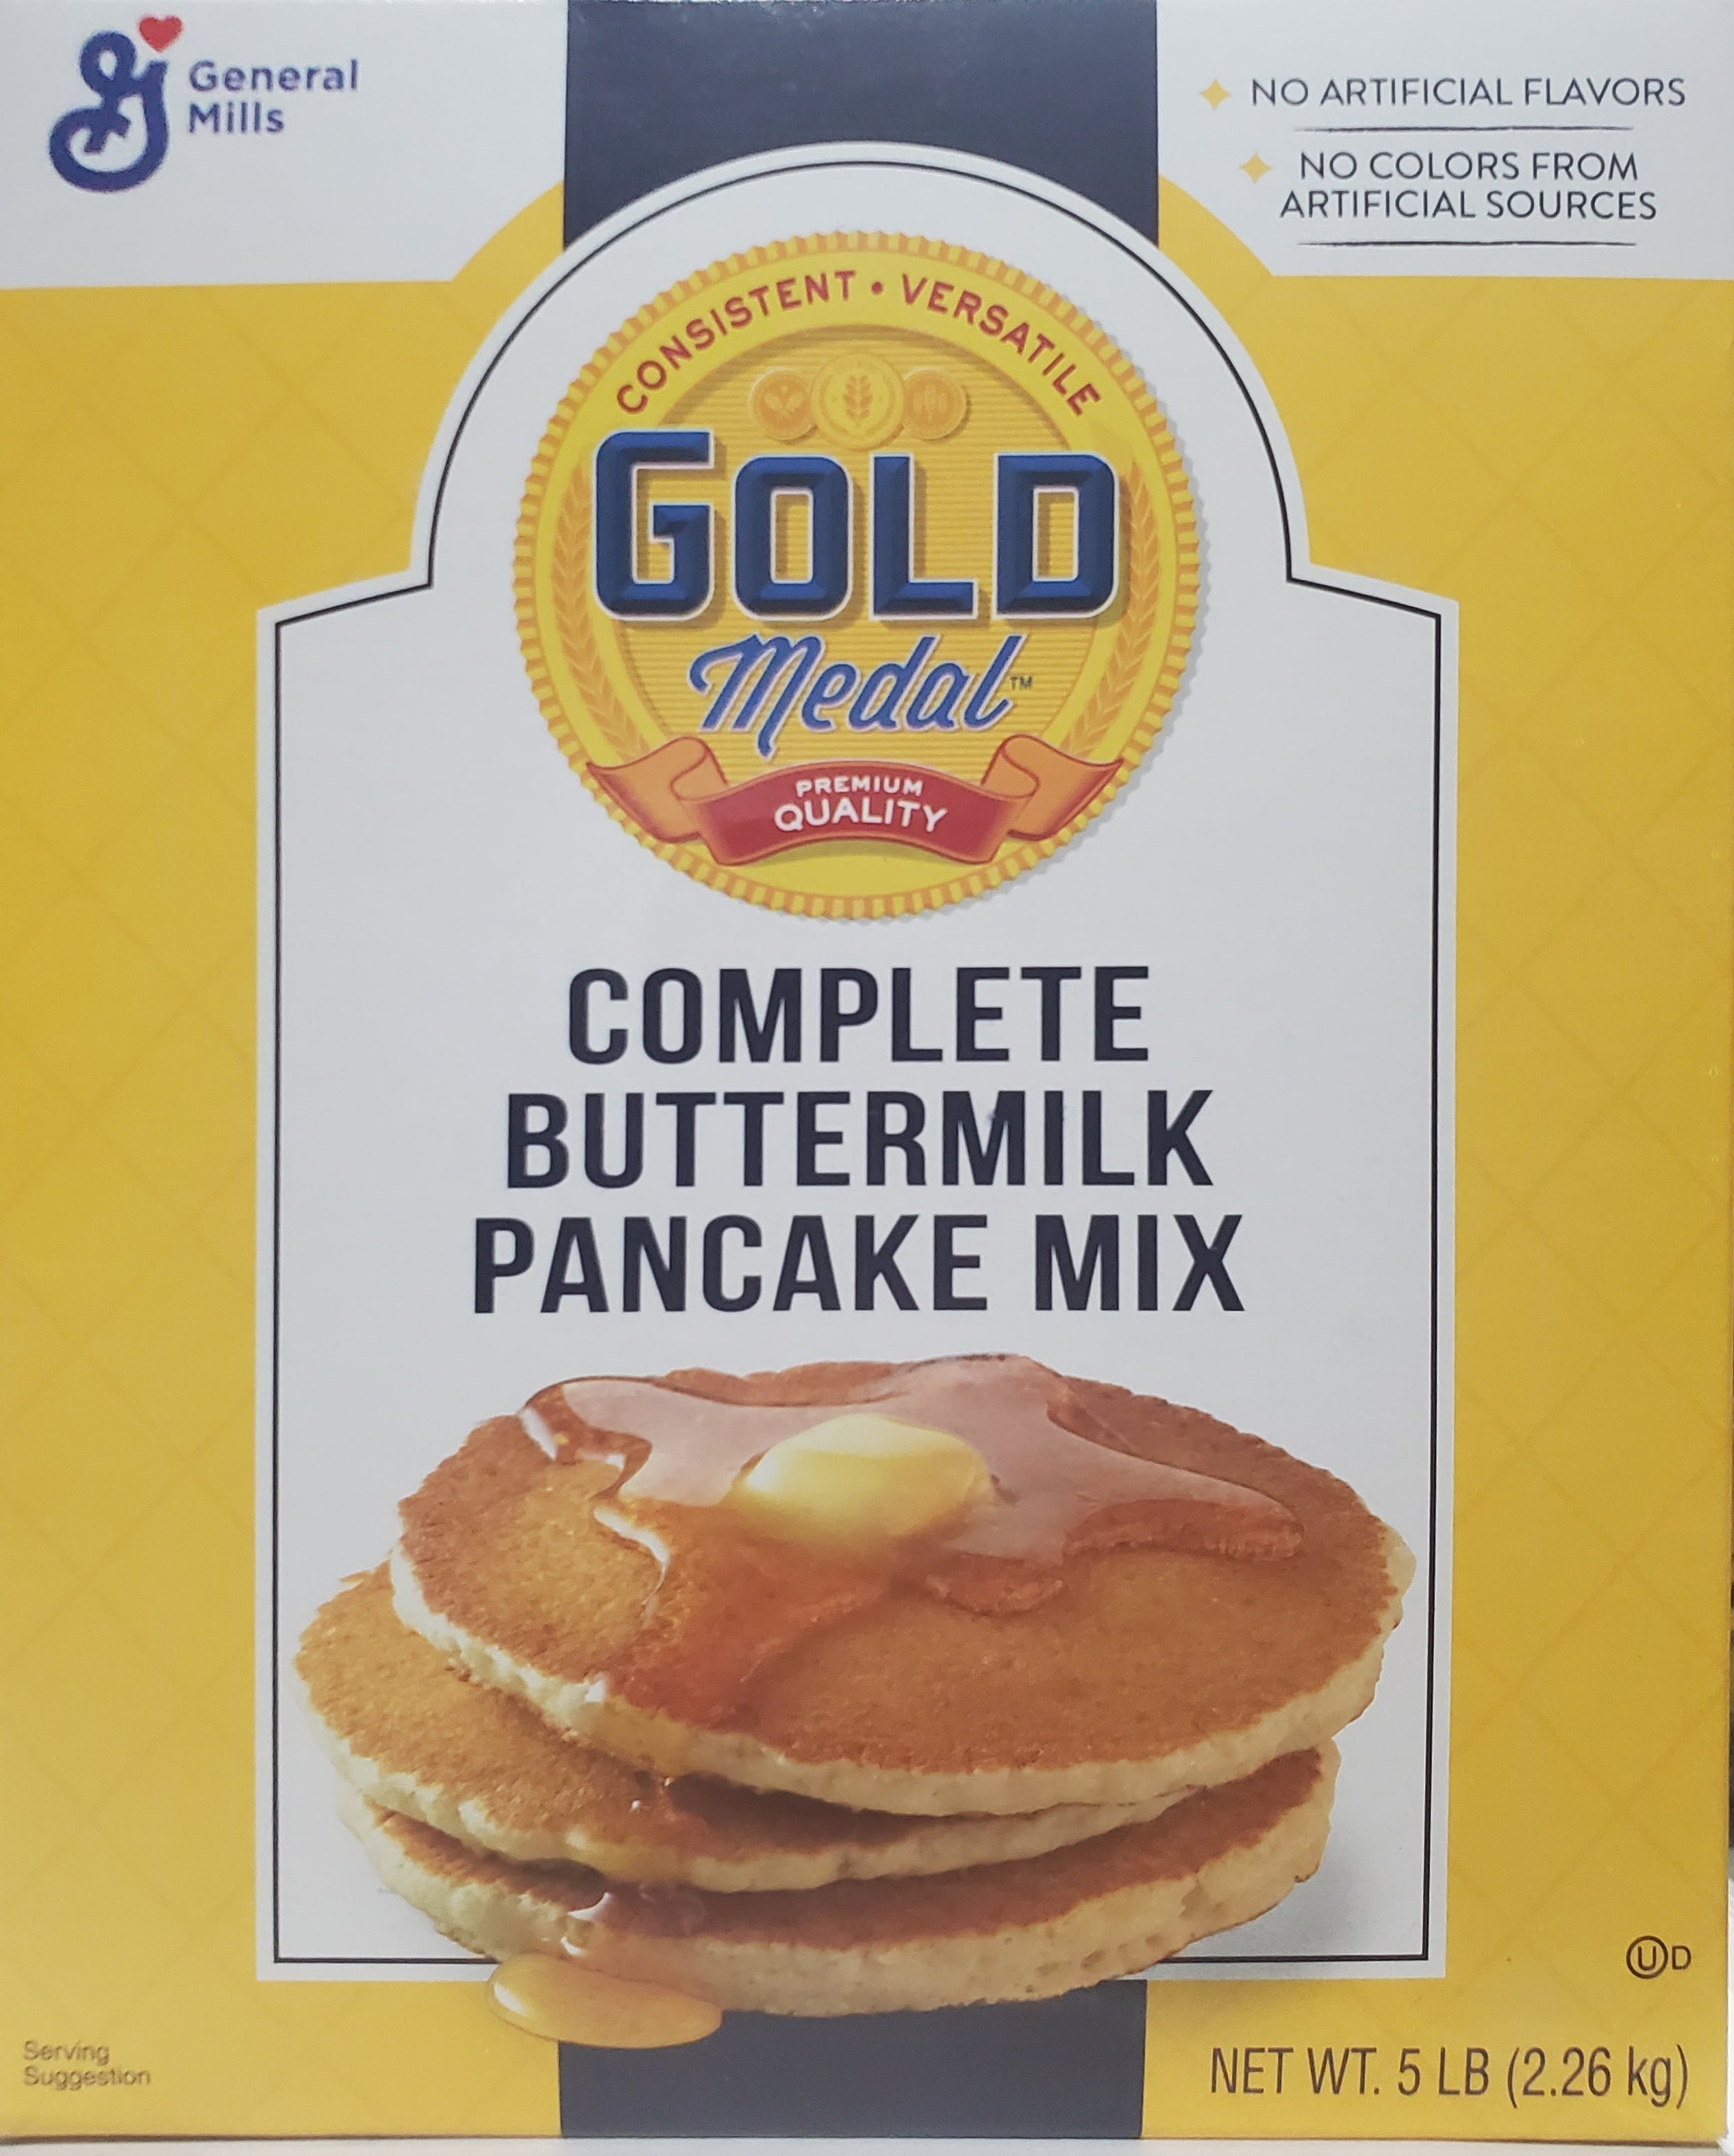 Pancake ready mix - kilo mekyal